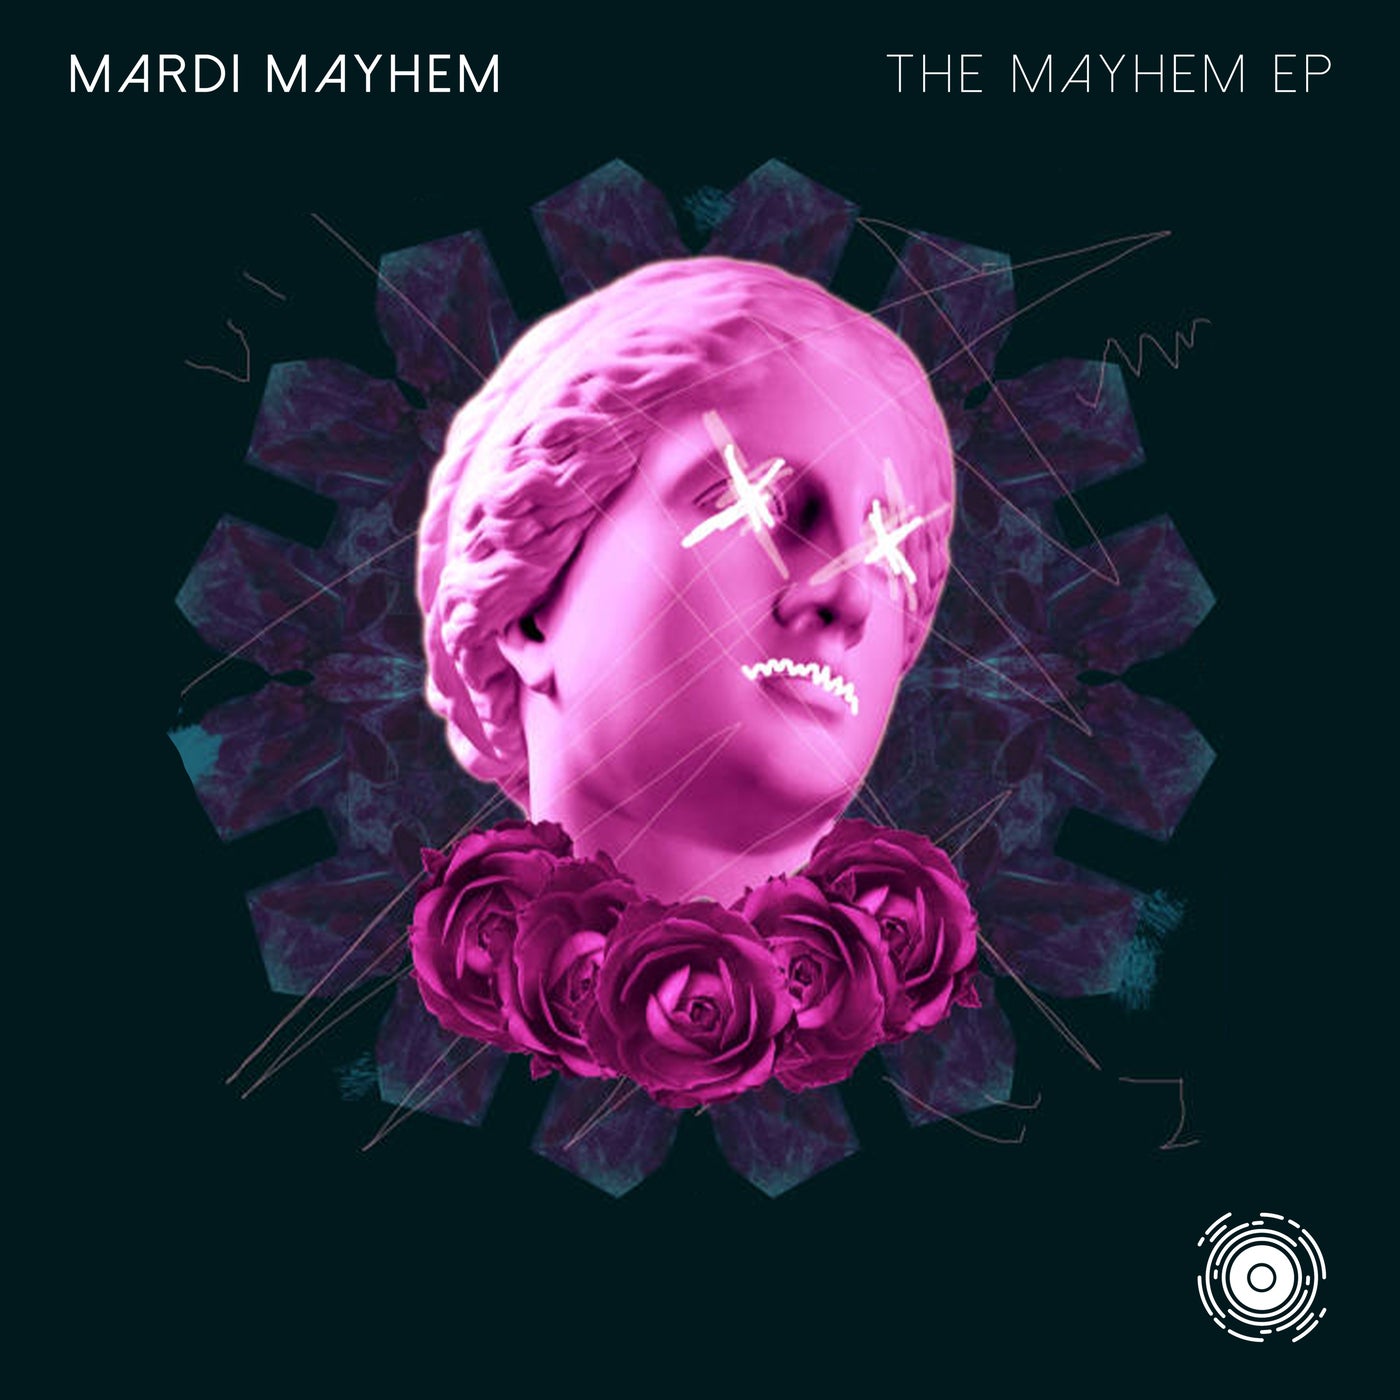 The Mayhem EP